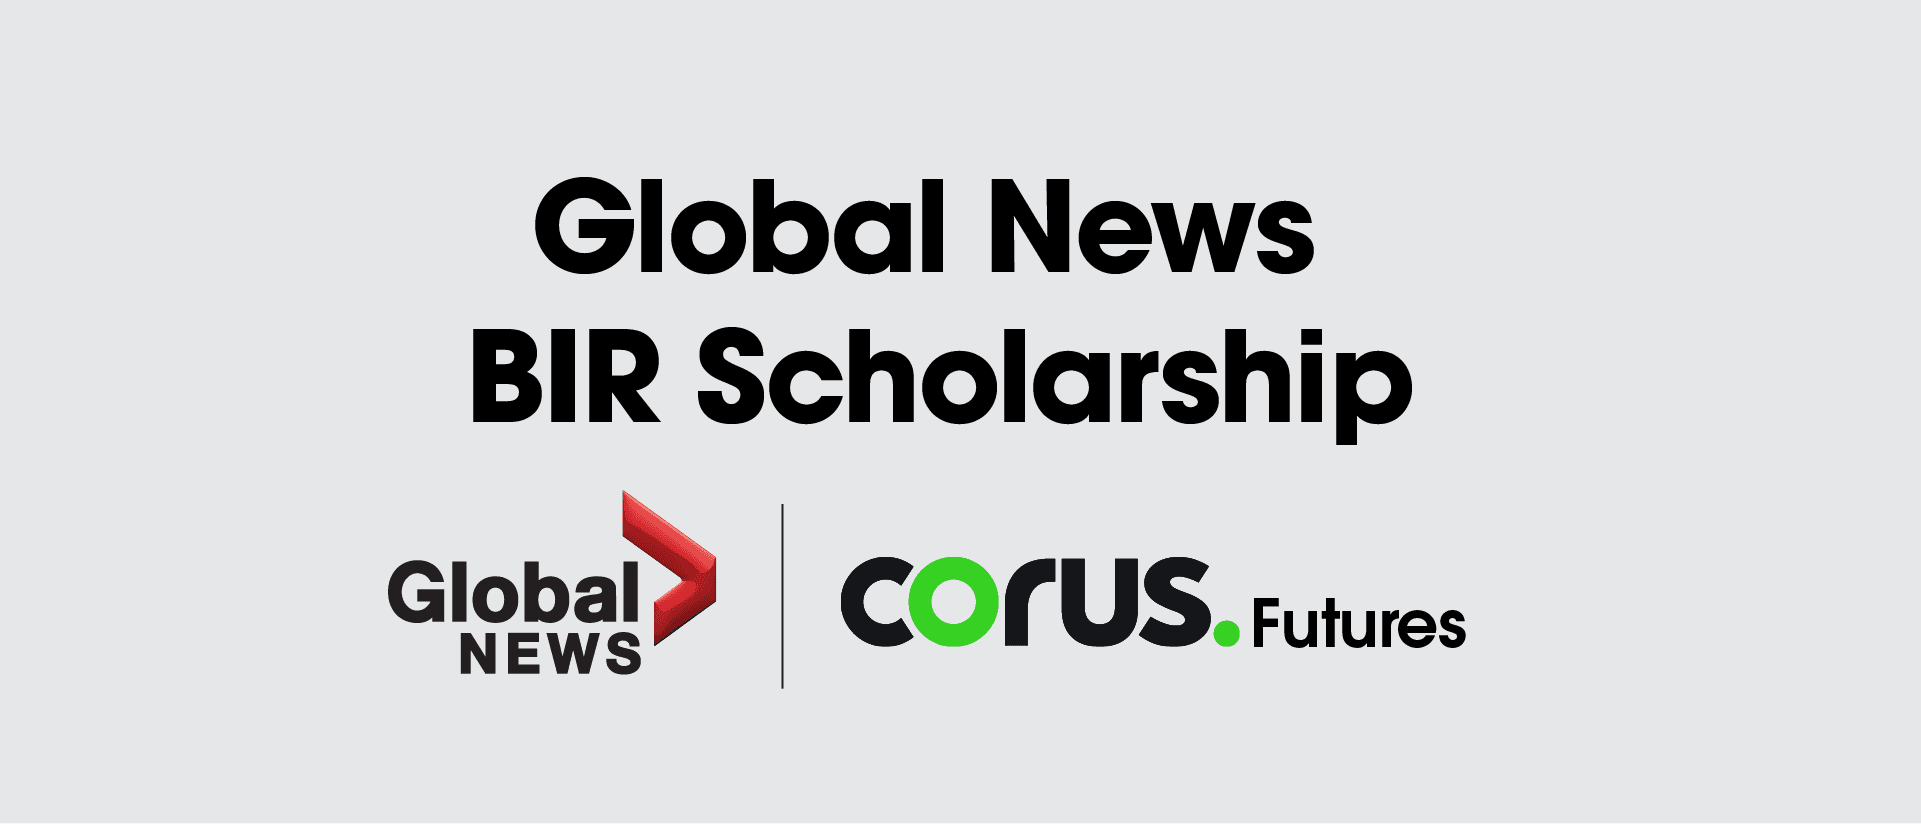 Global News BIR Scholarship